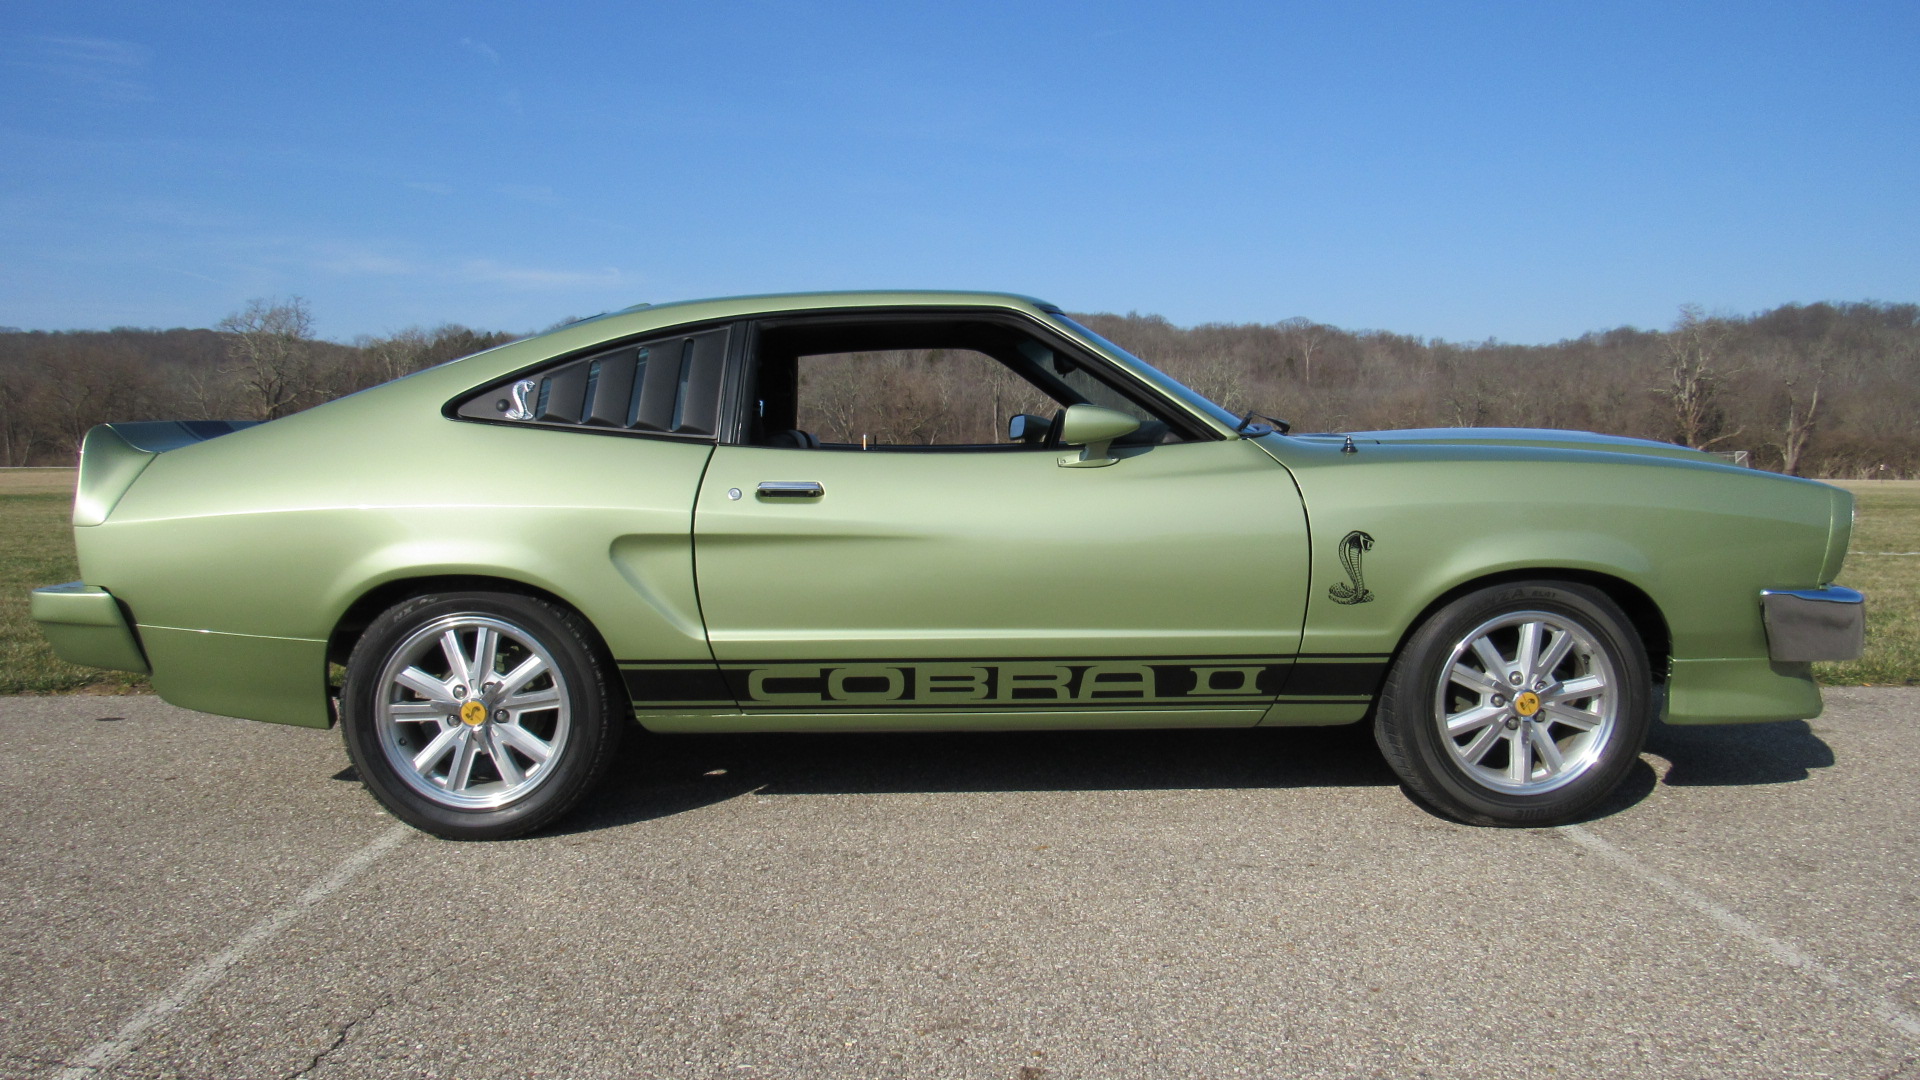 1977 Mustang Cobra II SOLD